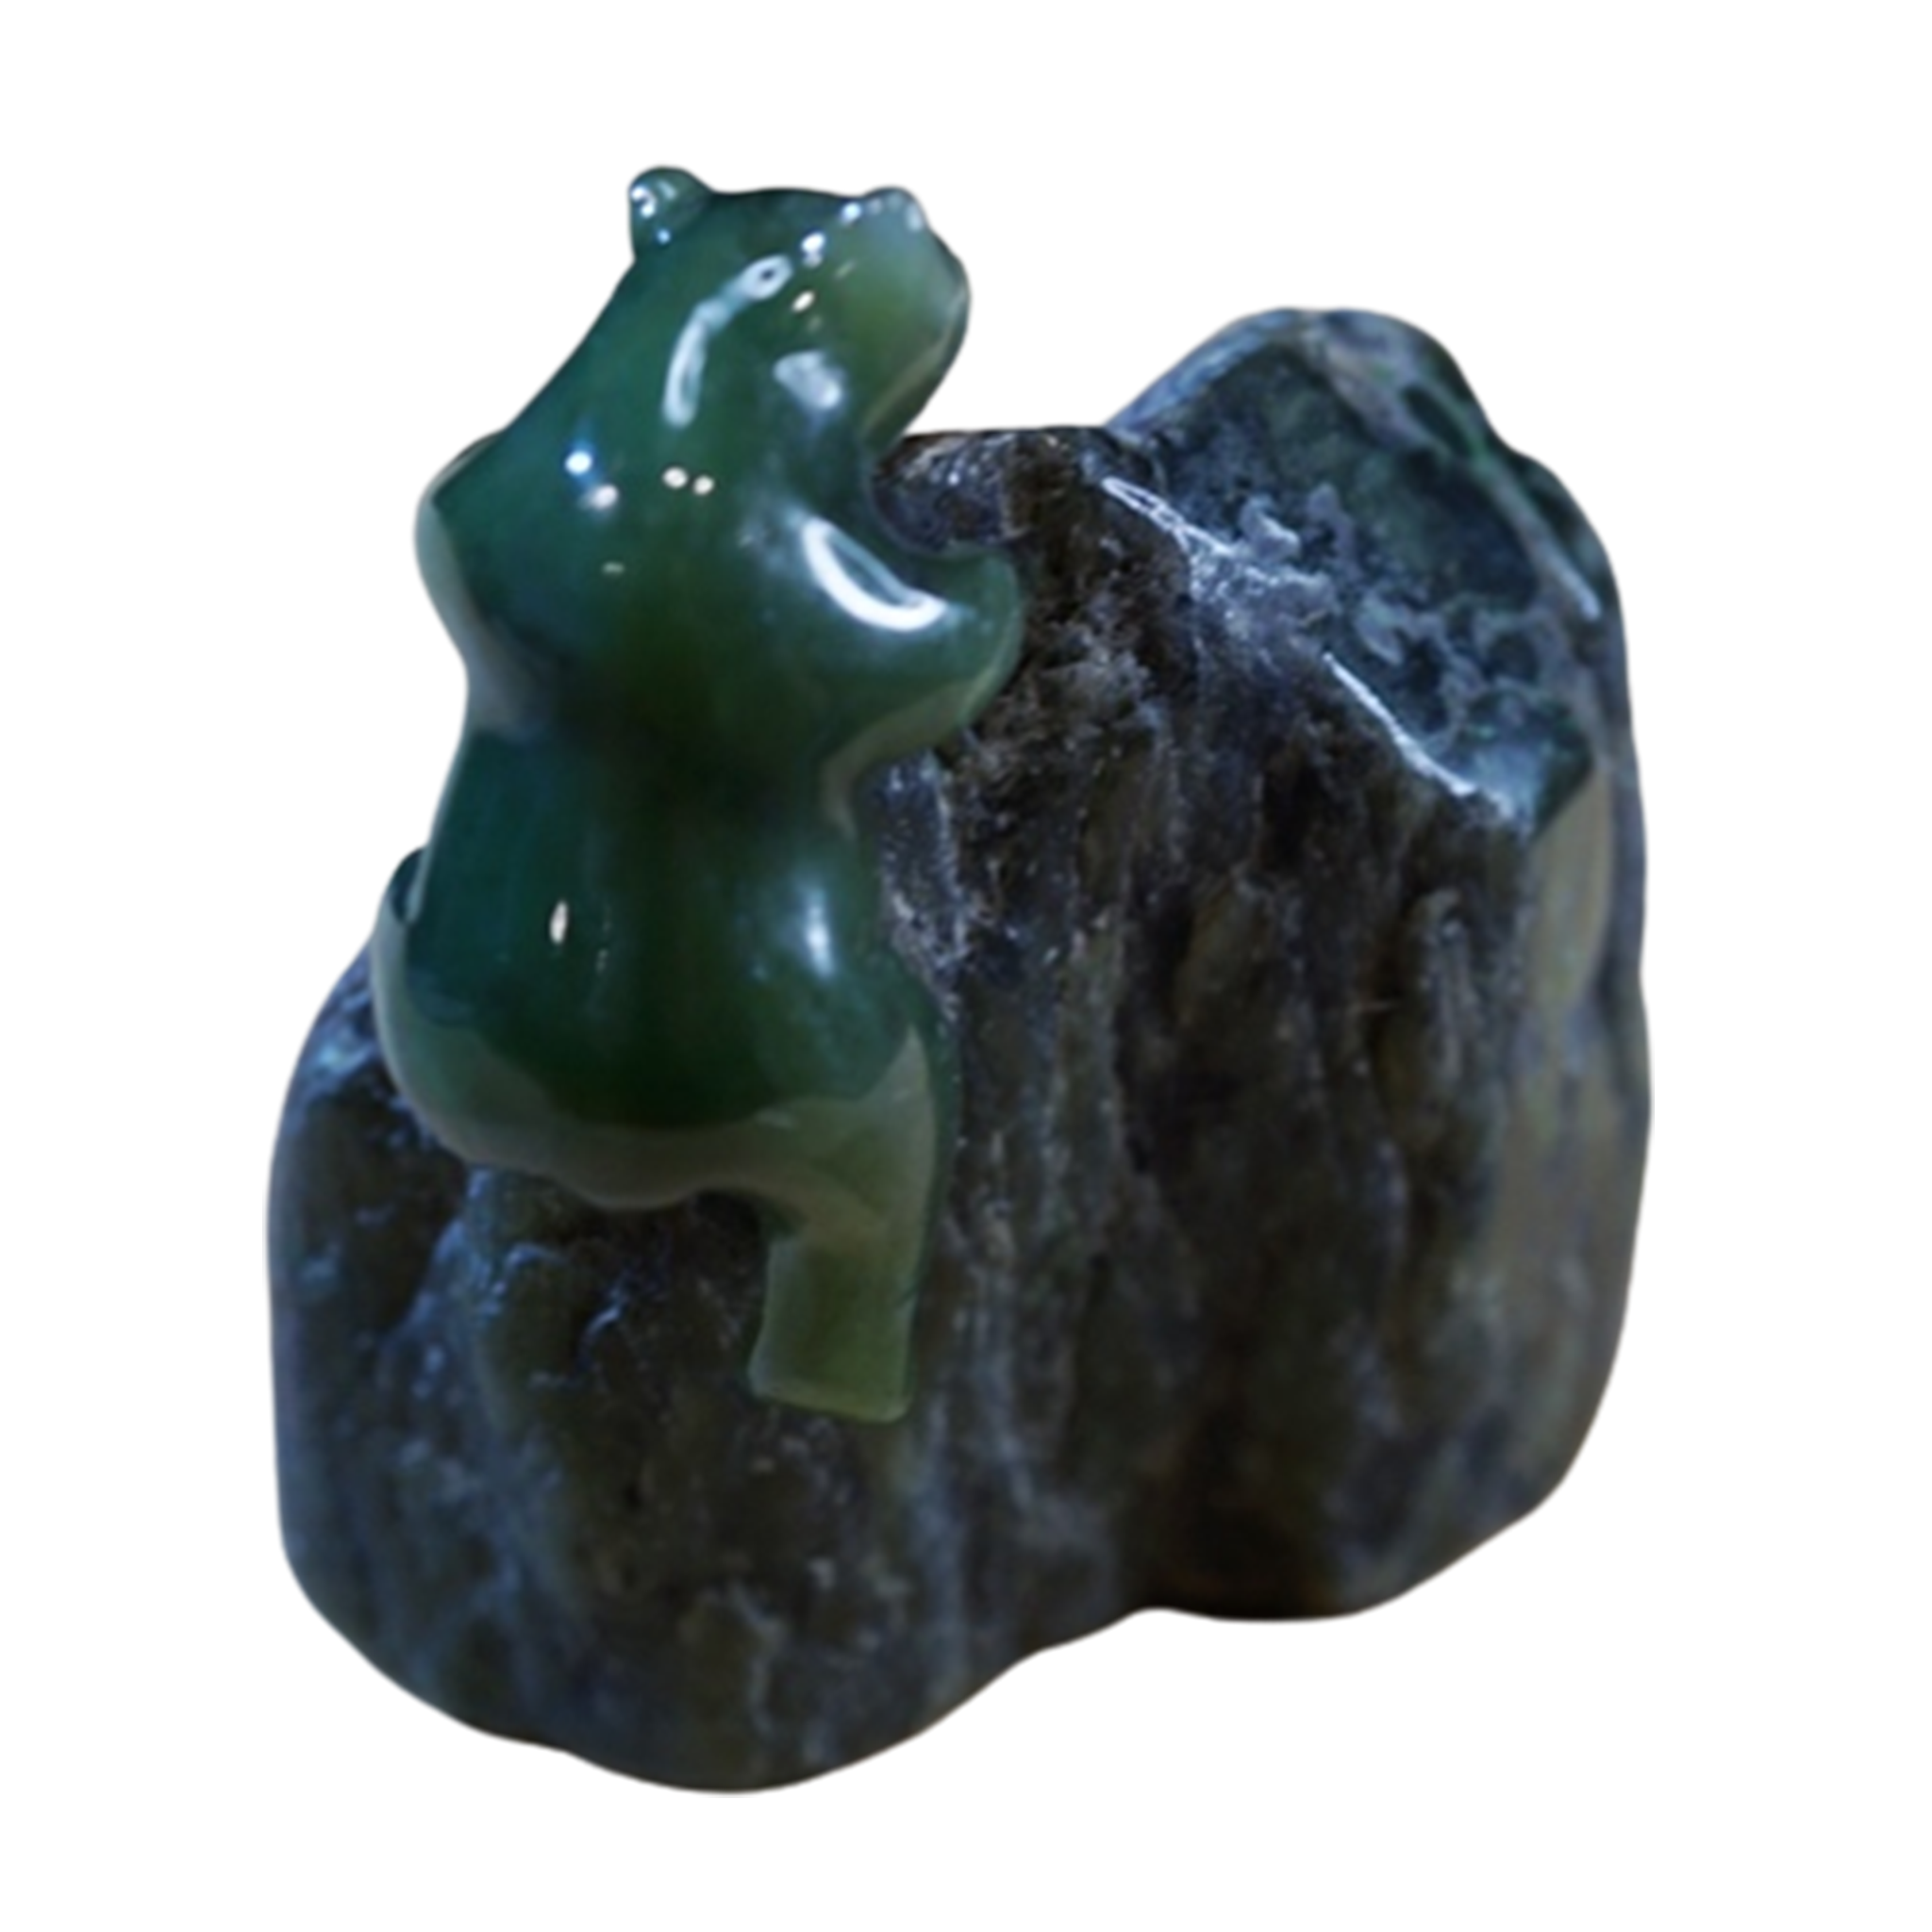 Jade Bear climbing jade rock